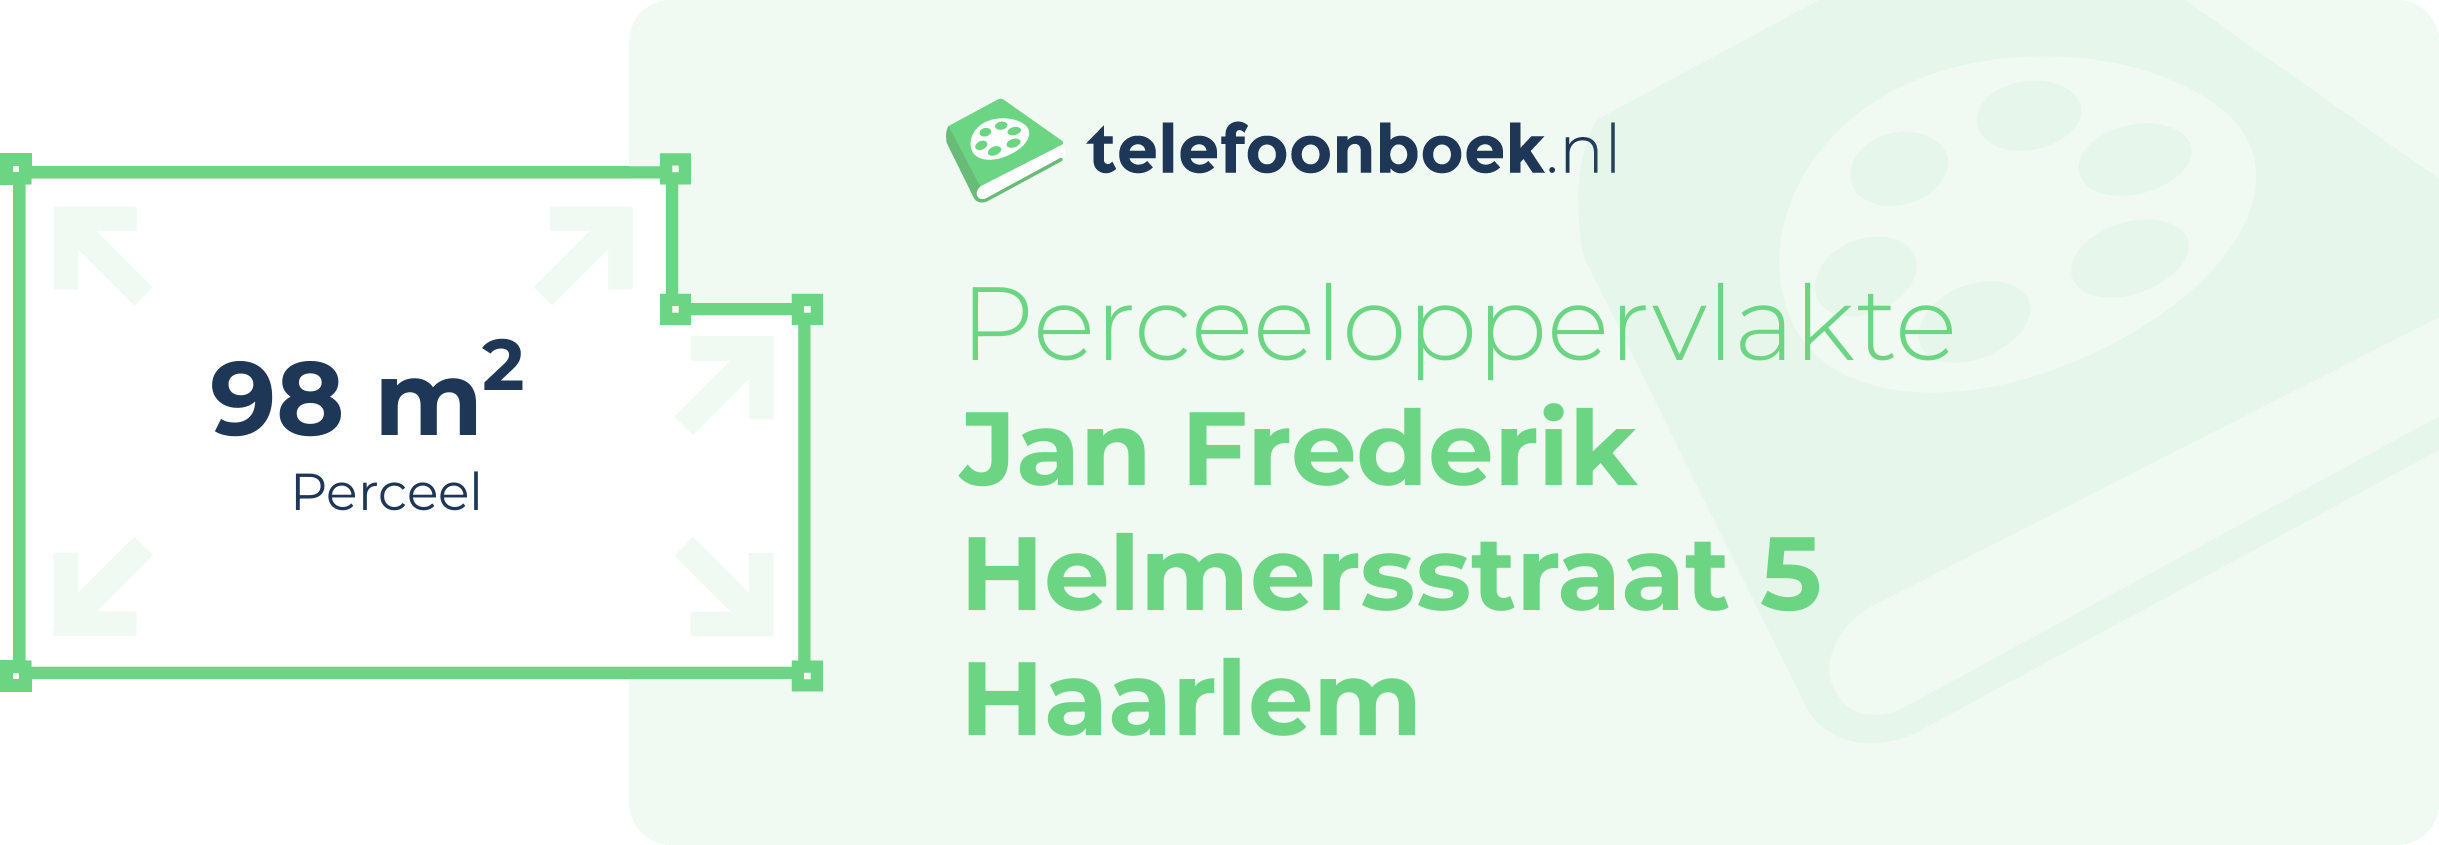 Perceeloppervlakte Jan Frederik Helmersstraat 5 Haarlem